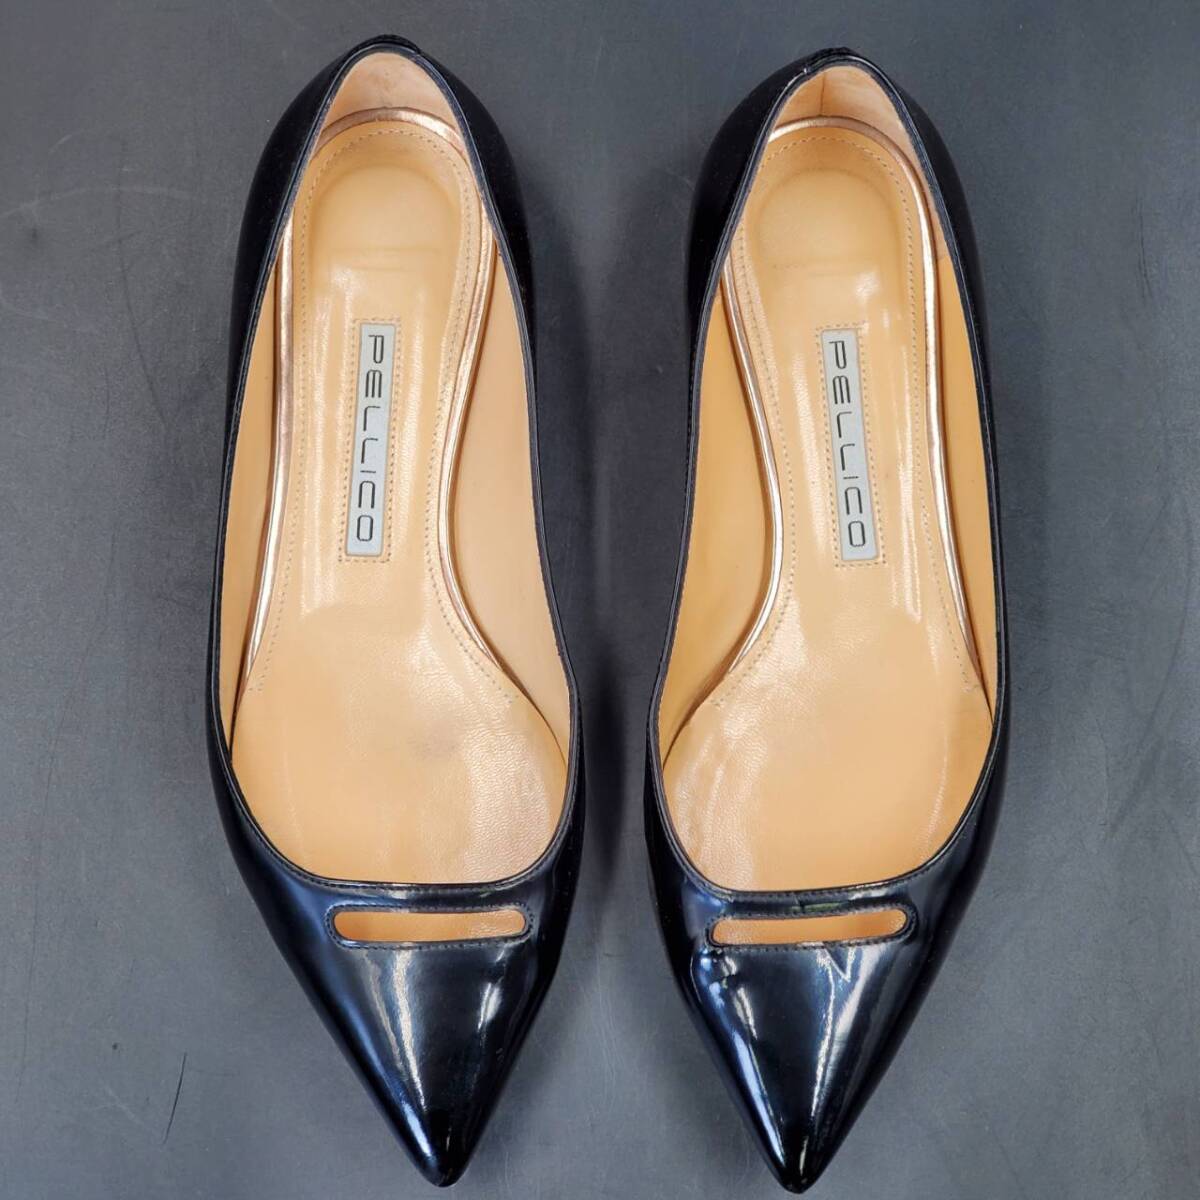 #85 PELLICO ペリーコ フラット エナメル パンプス サイズ 37 イタリア製 黒 ブラック ローヒール 靴 ポインテッドトゥ 本革 アパレル の画像3